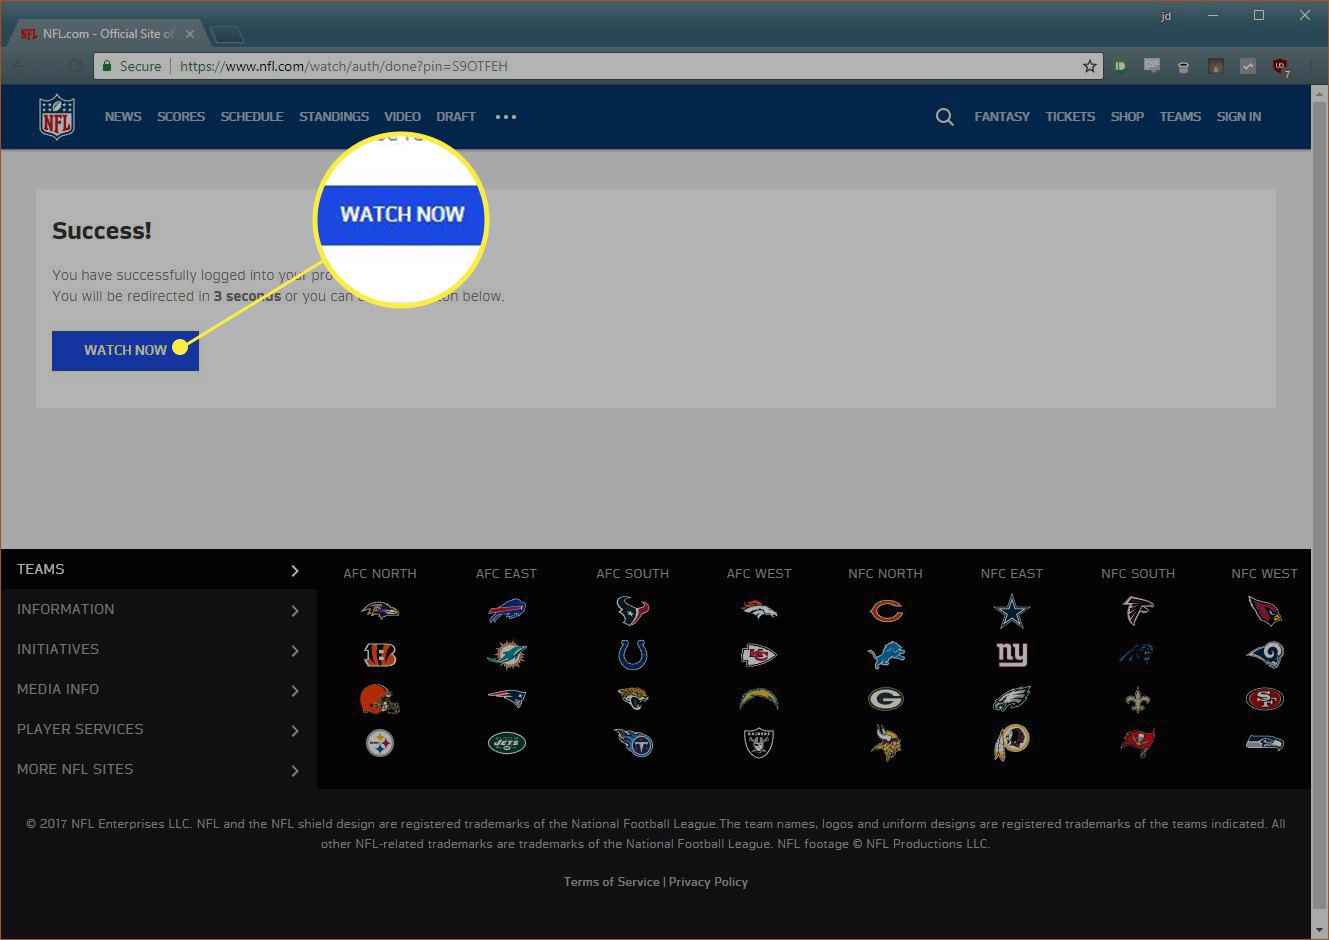 NFL-verkoston verkkosivusto, jossa on korostettuna Katso nyt